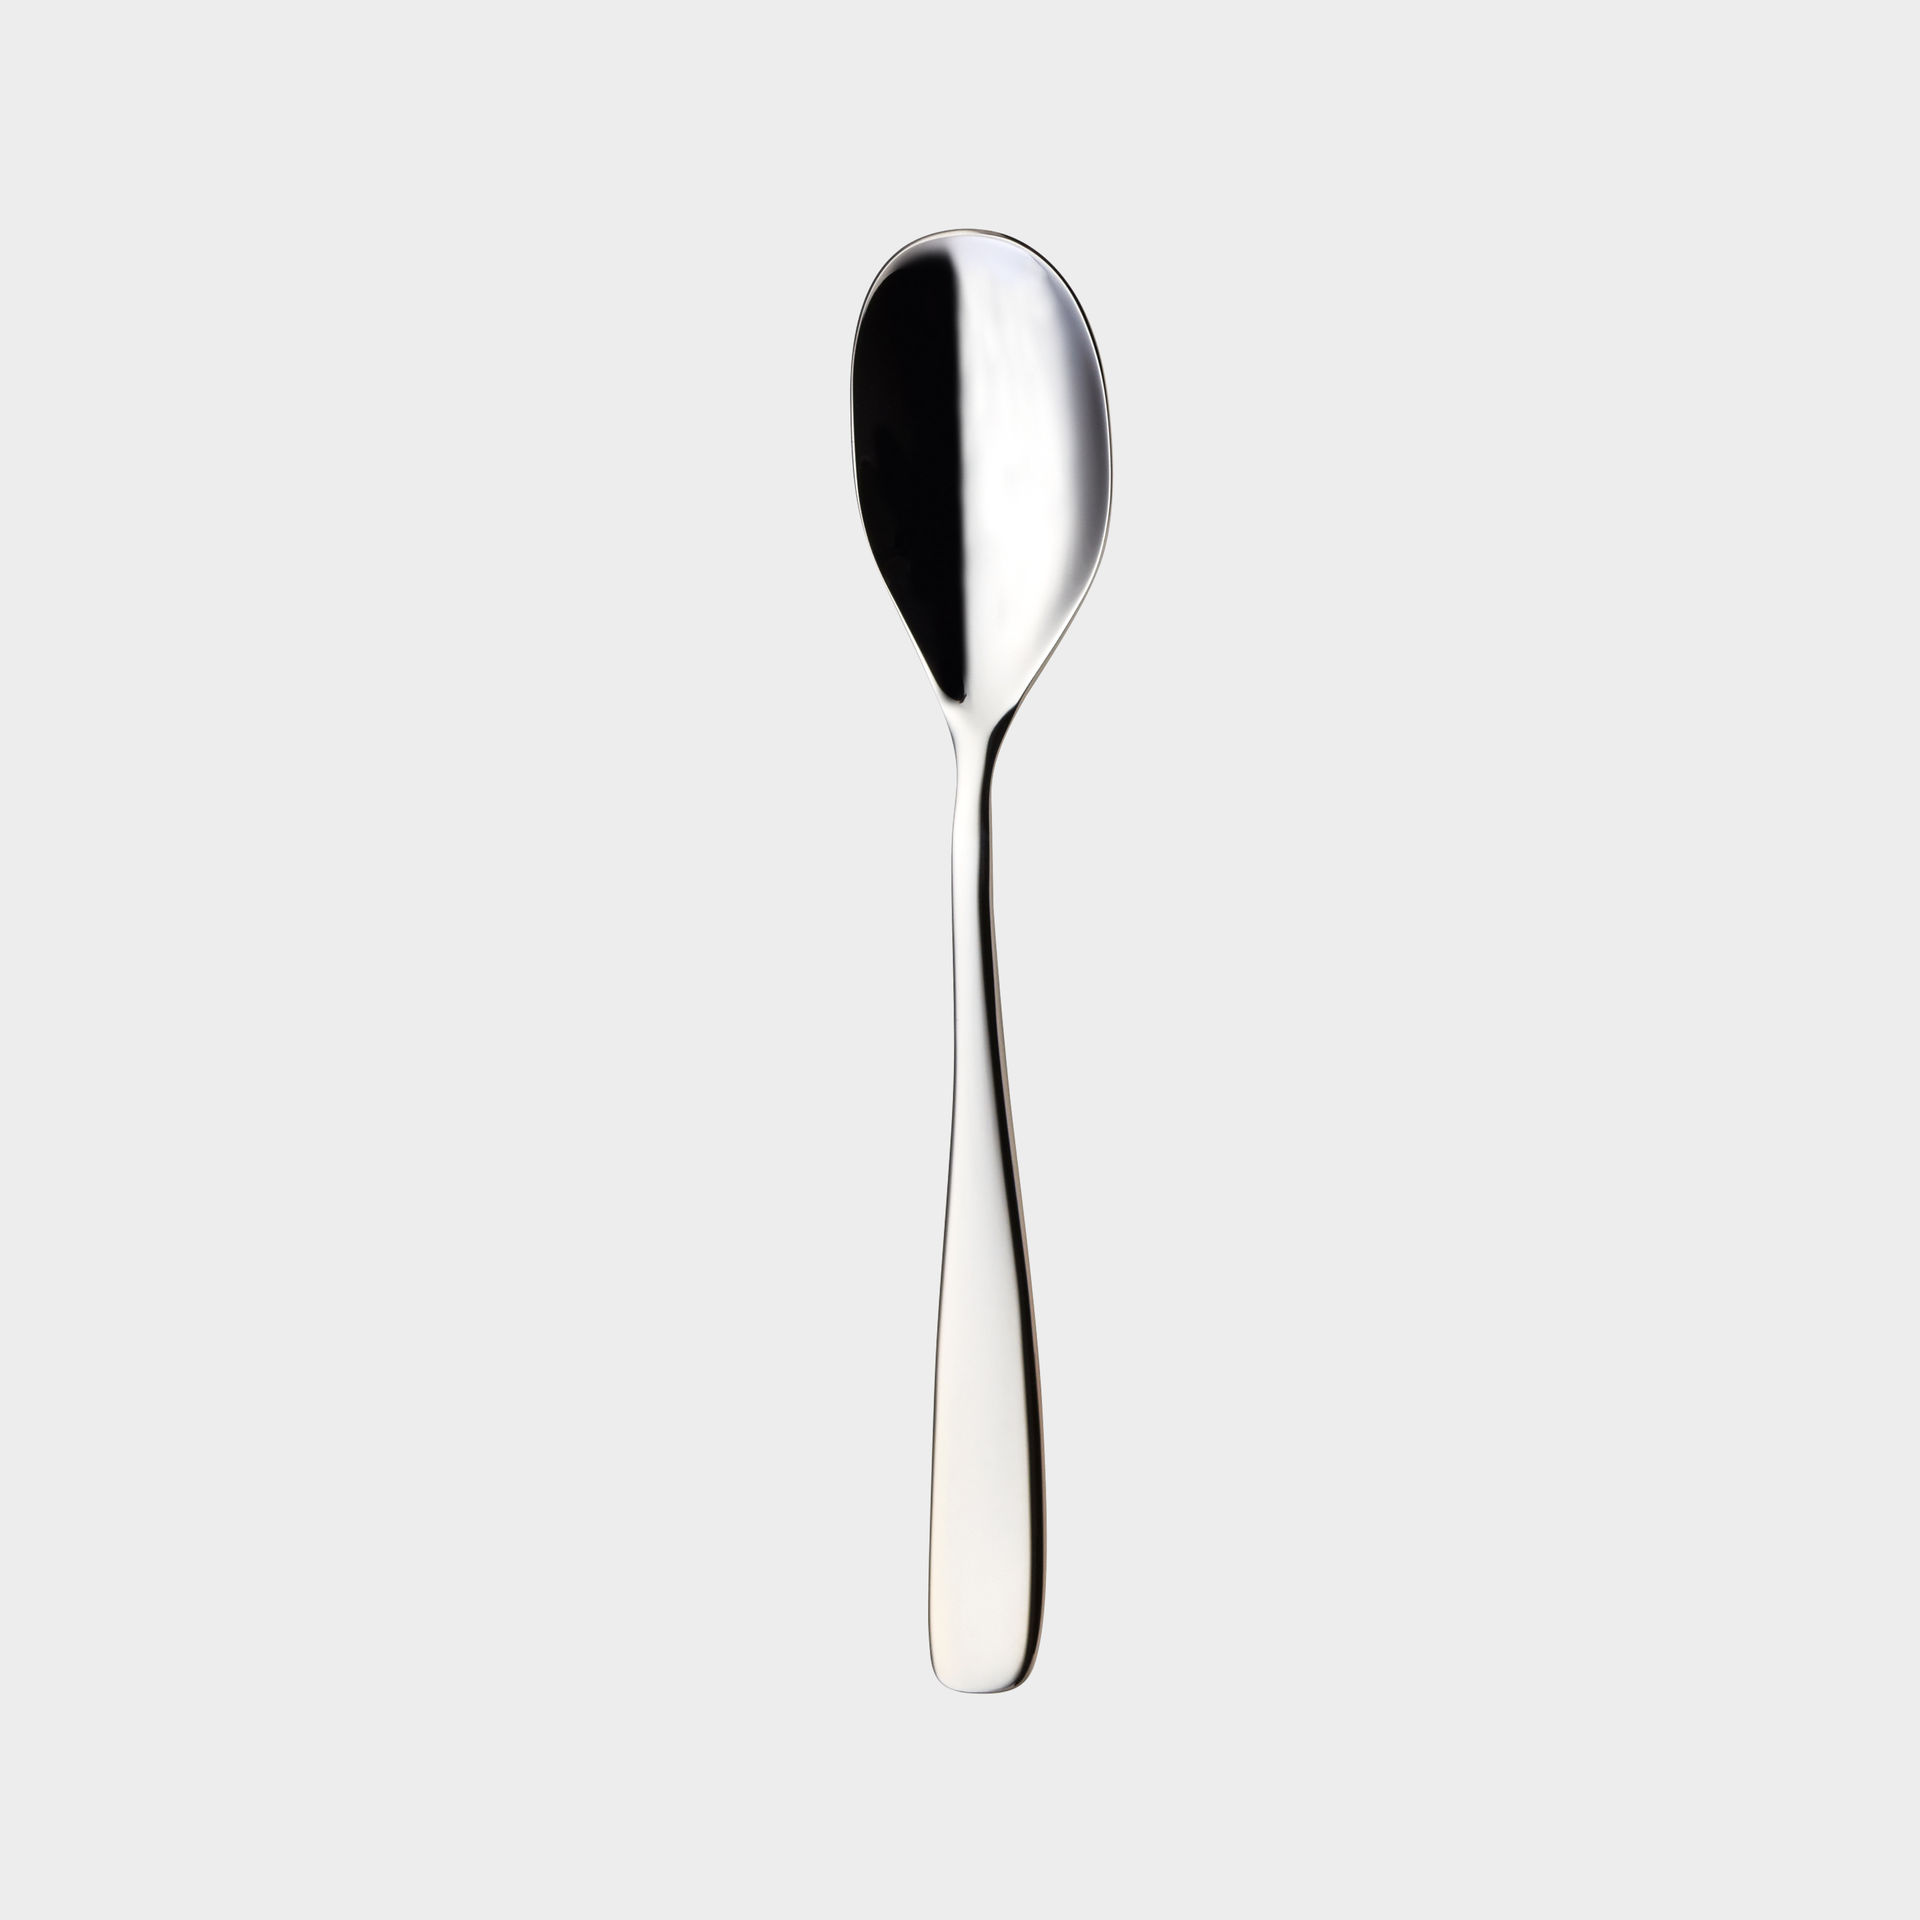 Tuva tea spoon product image